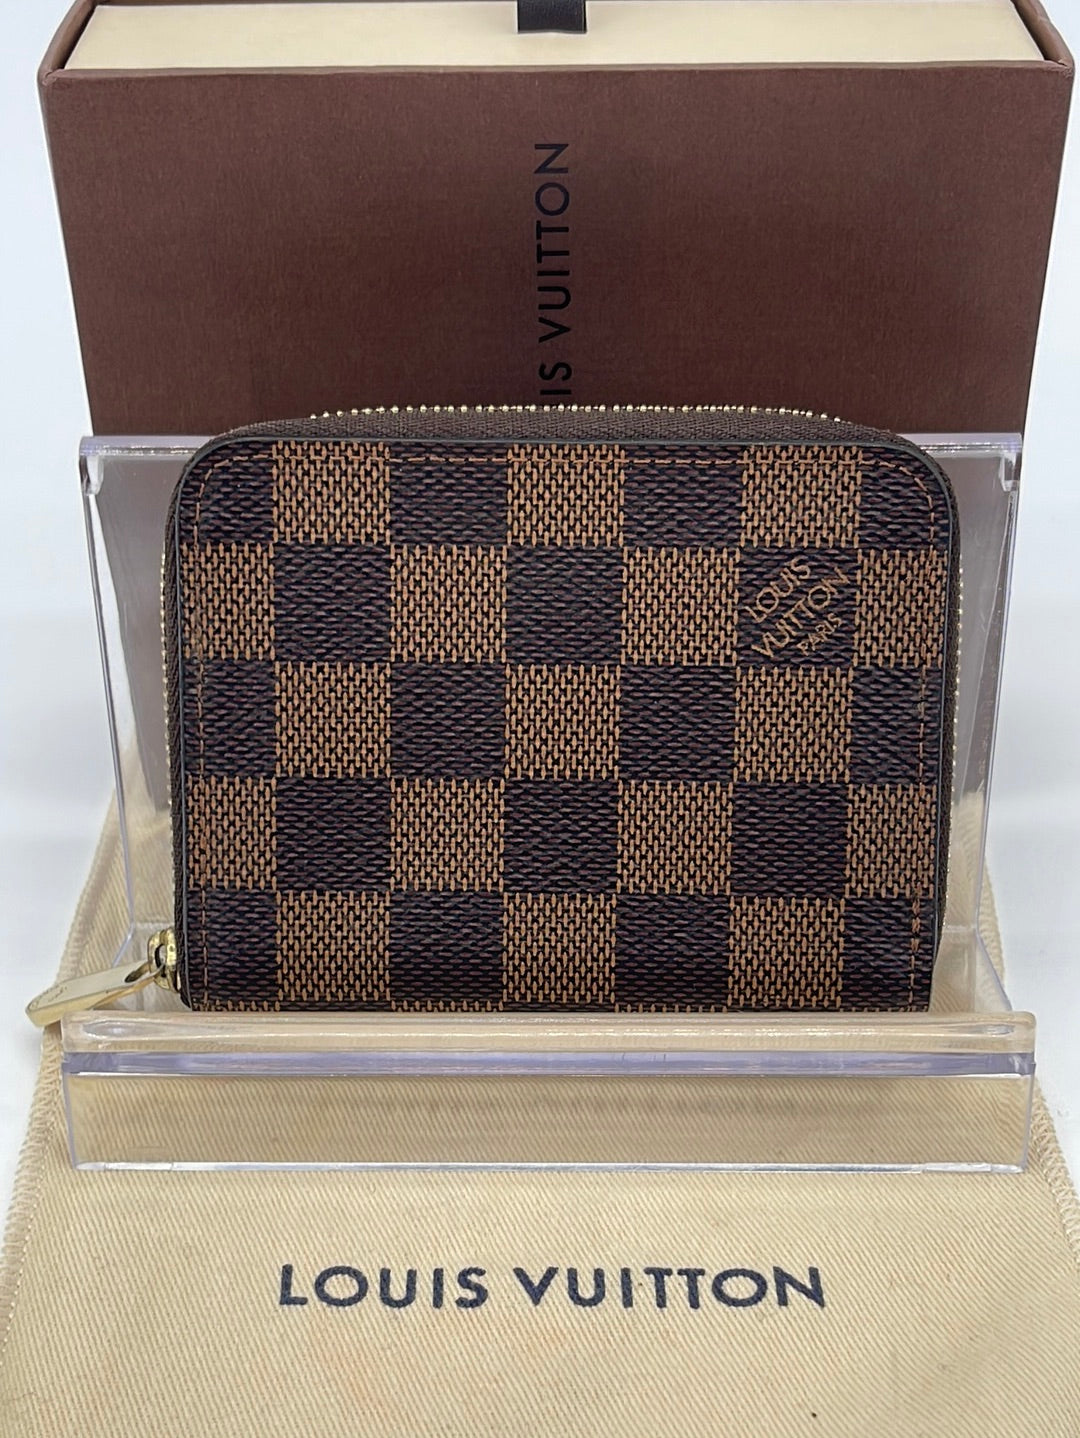 SOLD Authentic Louis Vuitton Wallet Damier Ebene  Louis vuitton wallet,  Zip coin pouch, Vuitton box